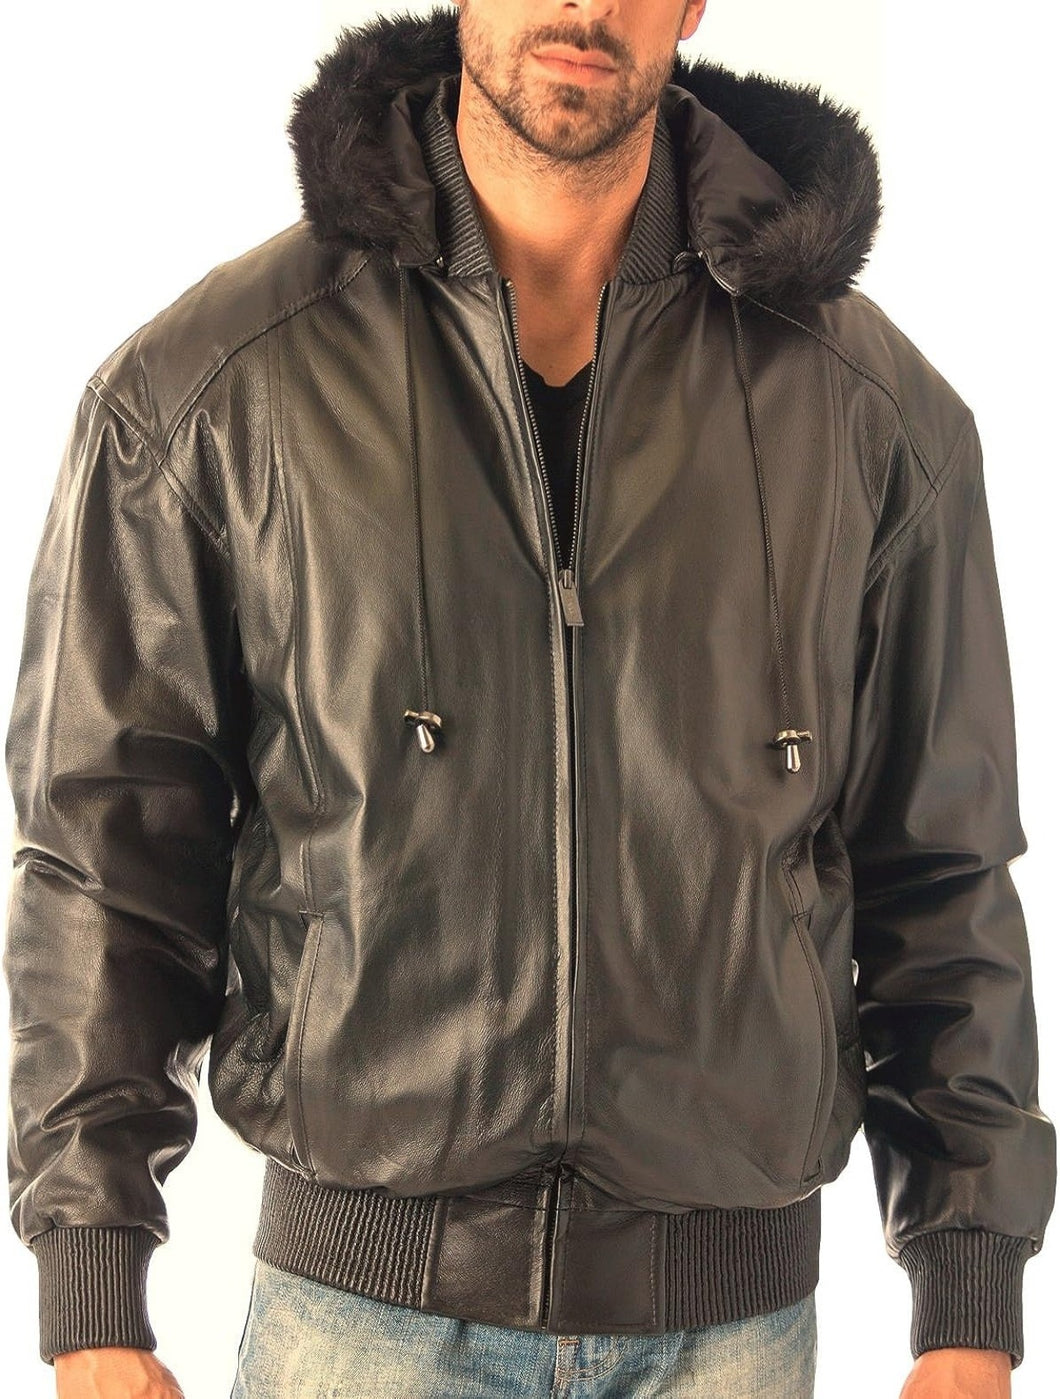 Men's Stylish Reed Hooded Leather Bomber Jacket